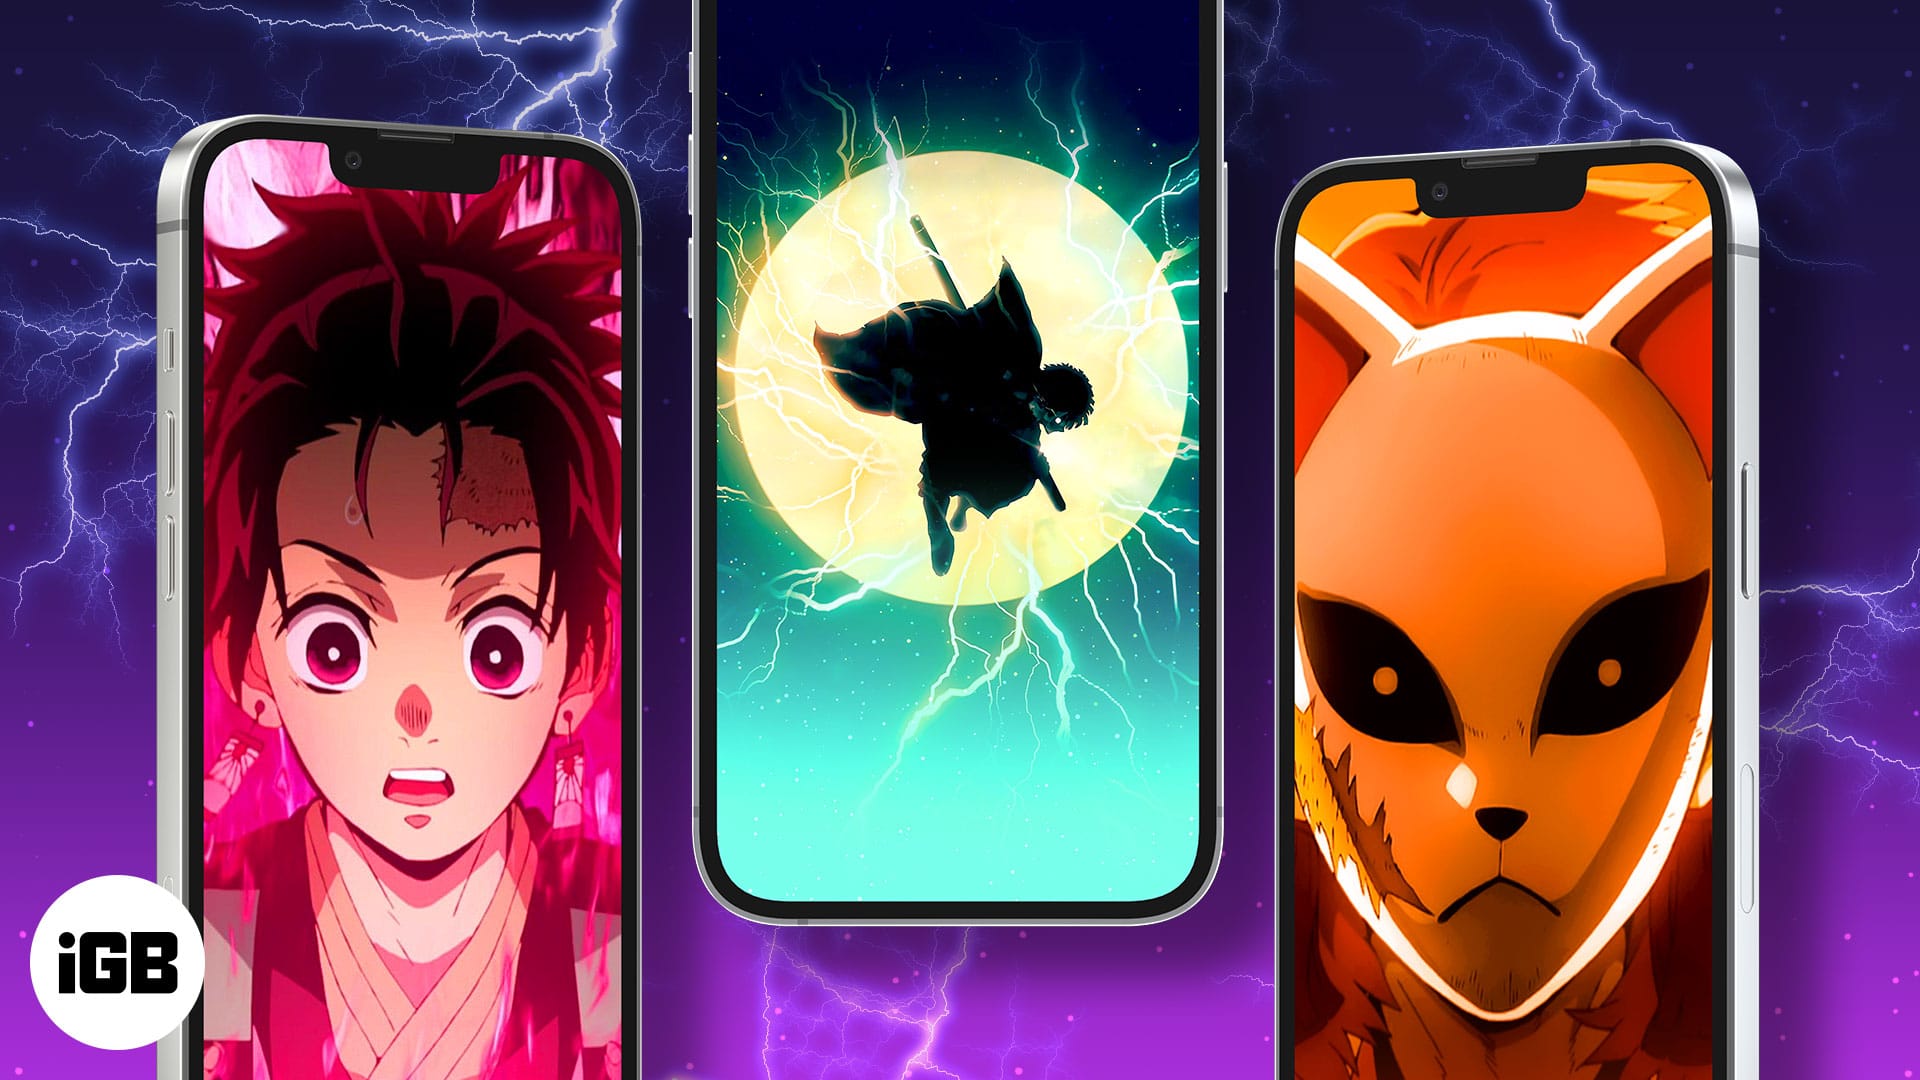 Hình nền Demon Slayer cho iPhone của bạn cần phải là một tác phẩm nghệ thuật thật sự đẹp mắt. Chúng tôi đang có một bức hình nền Demon Slayer vô cùng sắc nét và độc đáo dành riêng cho iPhone của bạn. Hãy cùng khám phá và trang trí màn hình iPhone của mình với hình nền Demon Slayer đầy ấn tượng này.